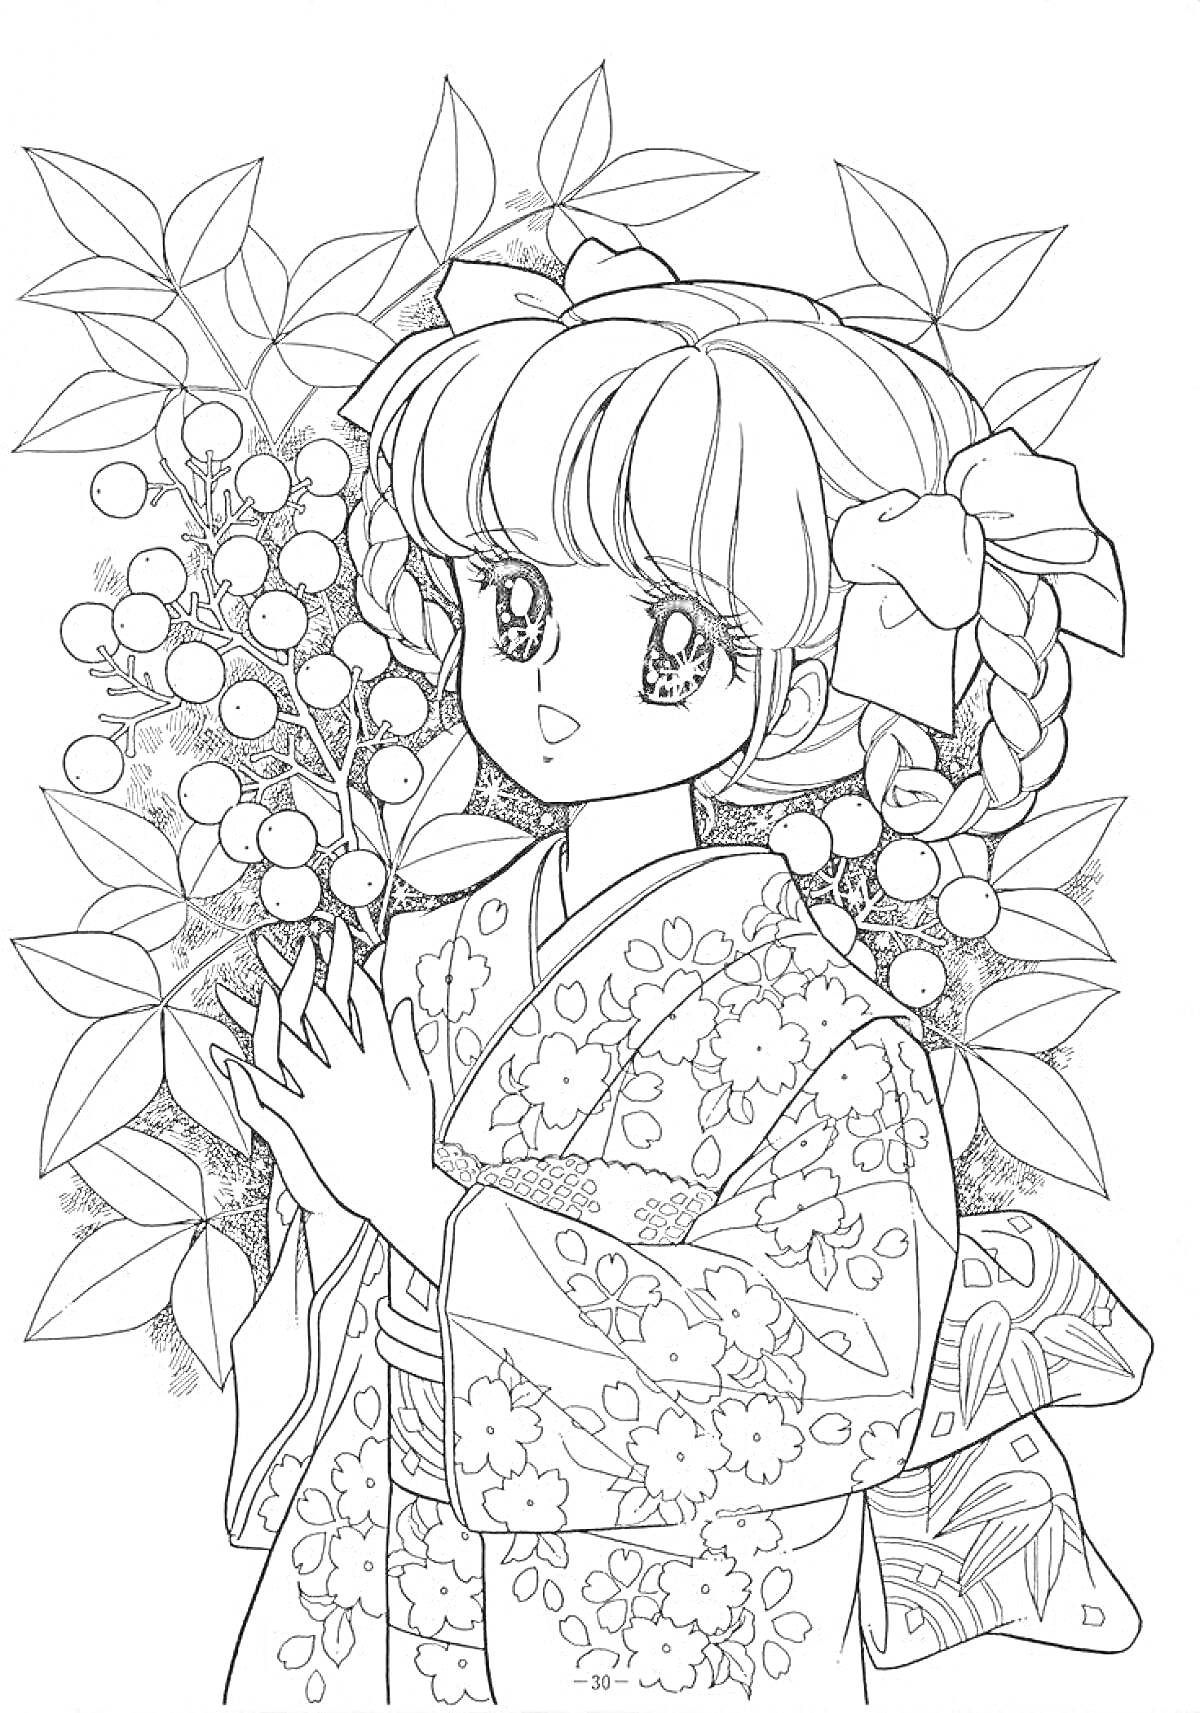 РаскраскаДевушка в кимоно возле цветущего куста